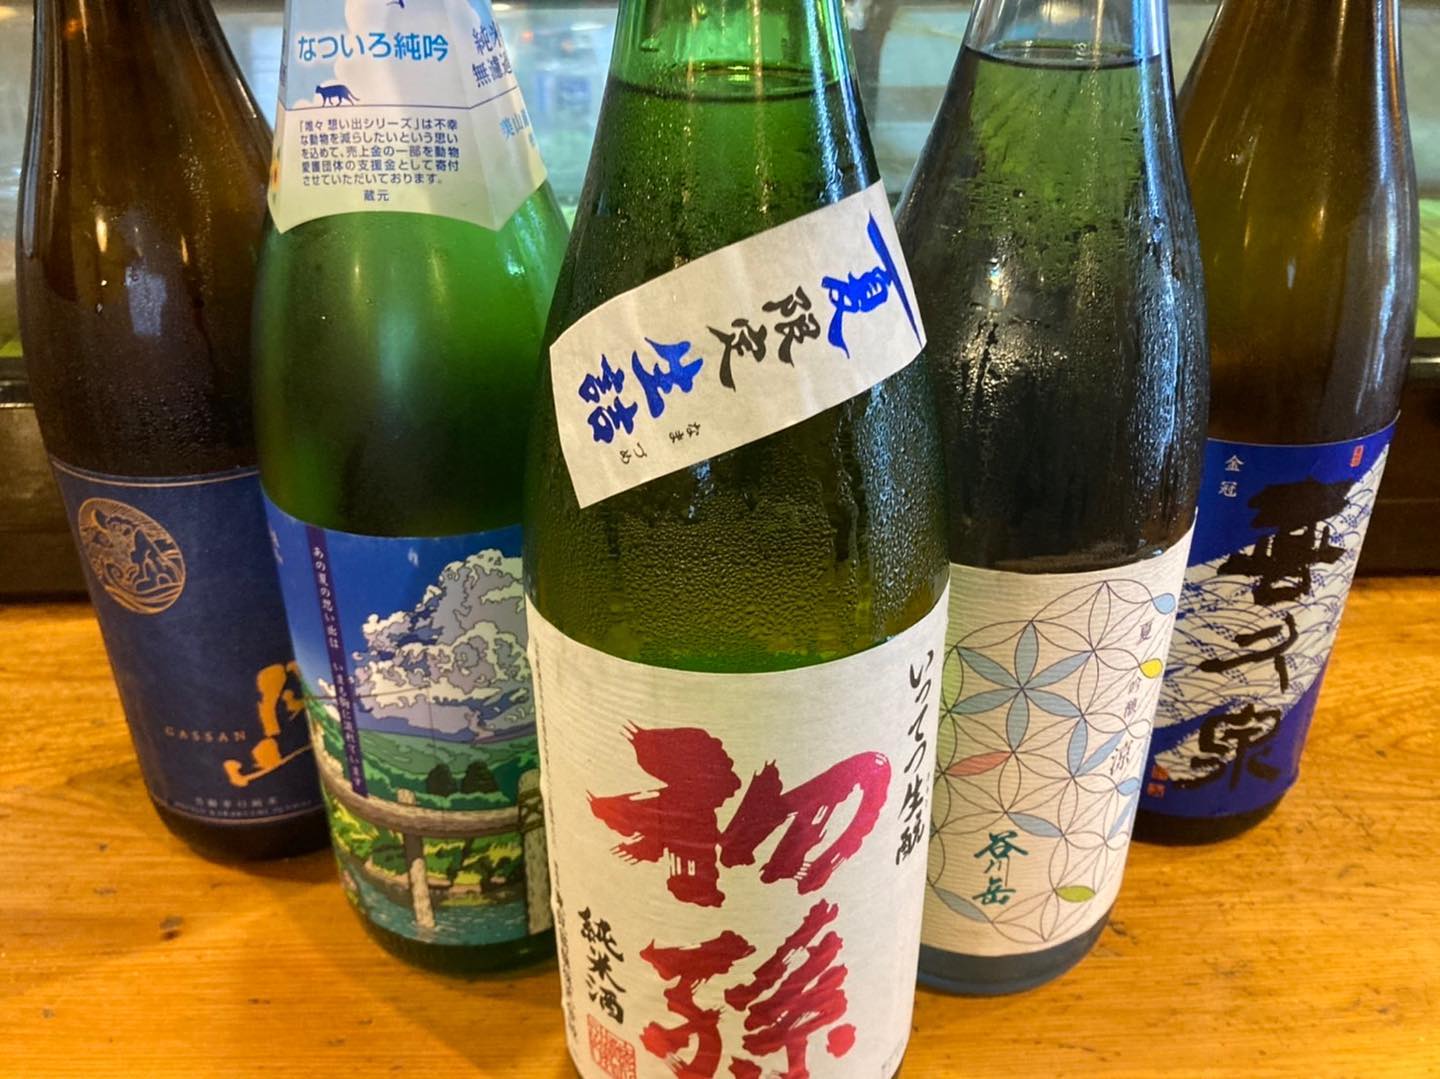 こんにちは 居酒屋かず美です！
7月、新しい日本酒を入荷しました！！
もちろん飲み比べセットでもご用意できますのでお気軽にお立ち寄りください！！！！
お待ちしております！